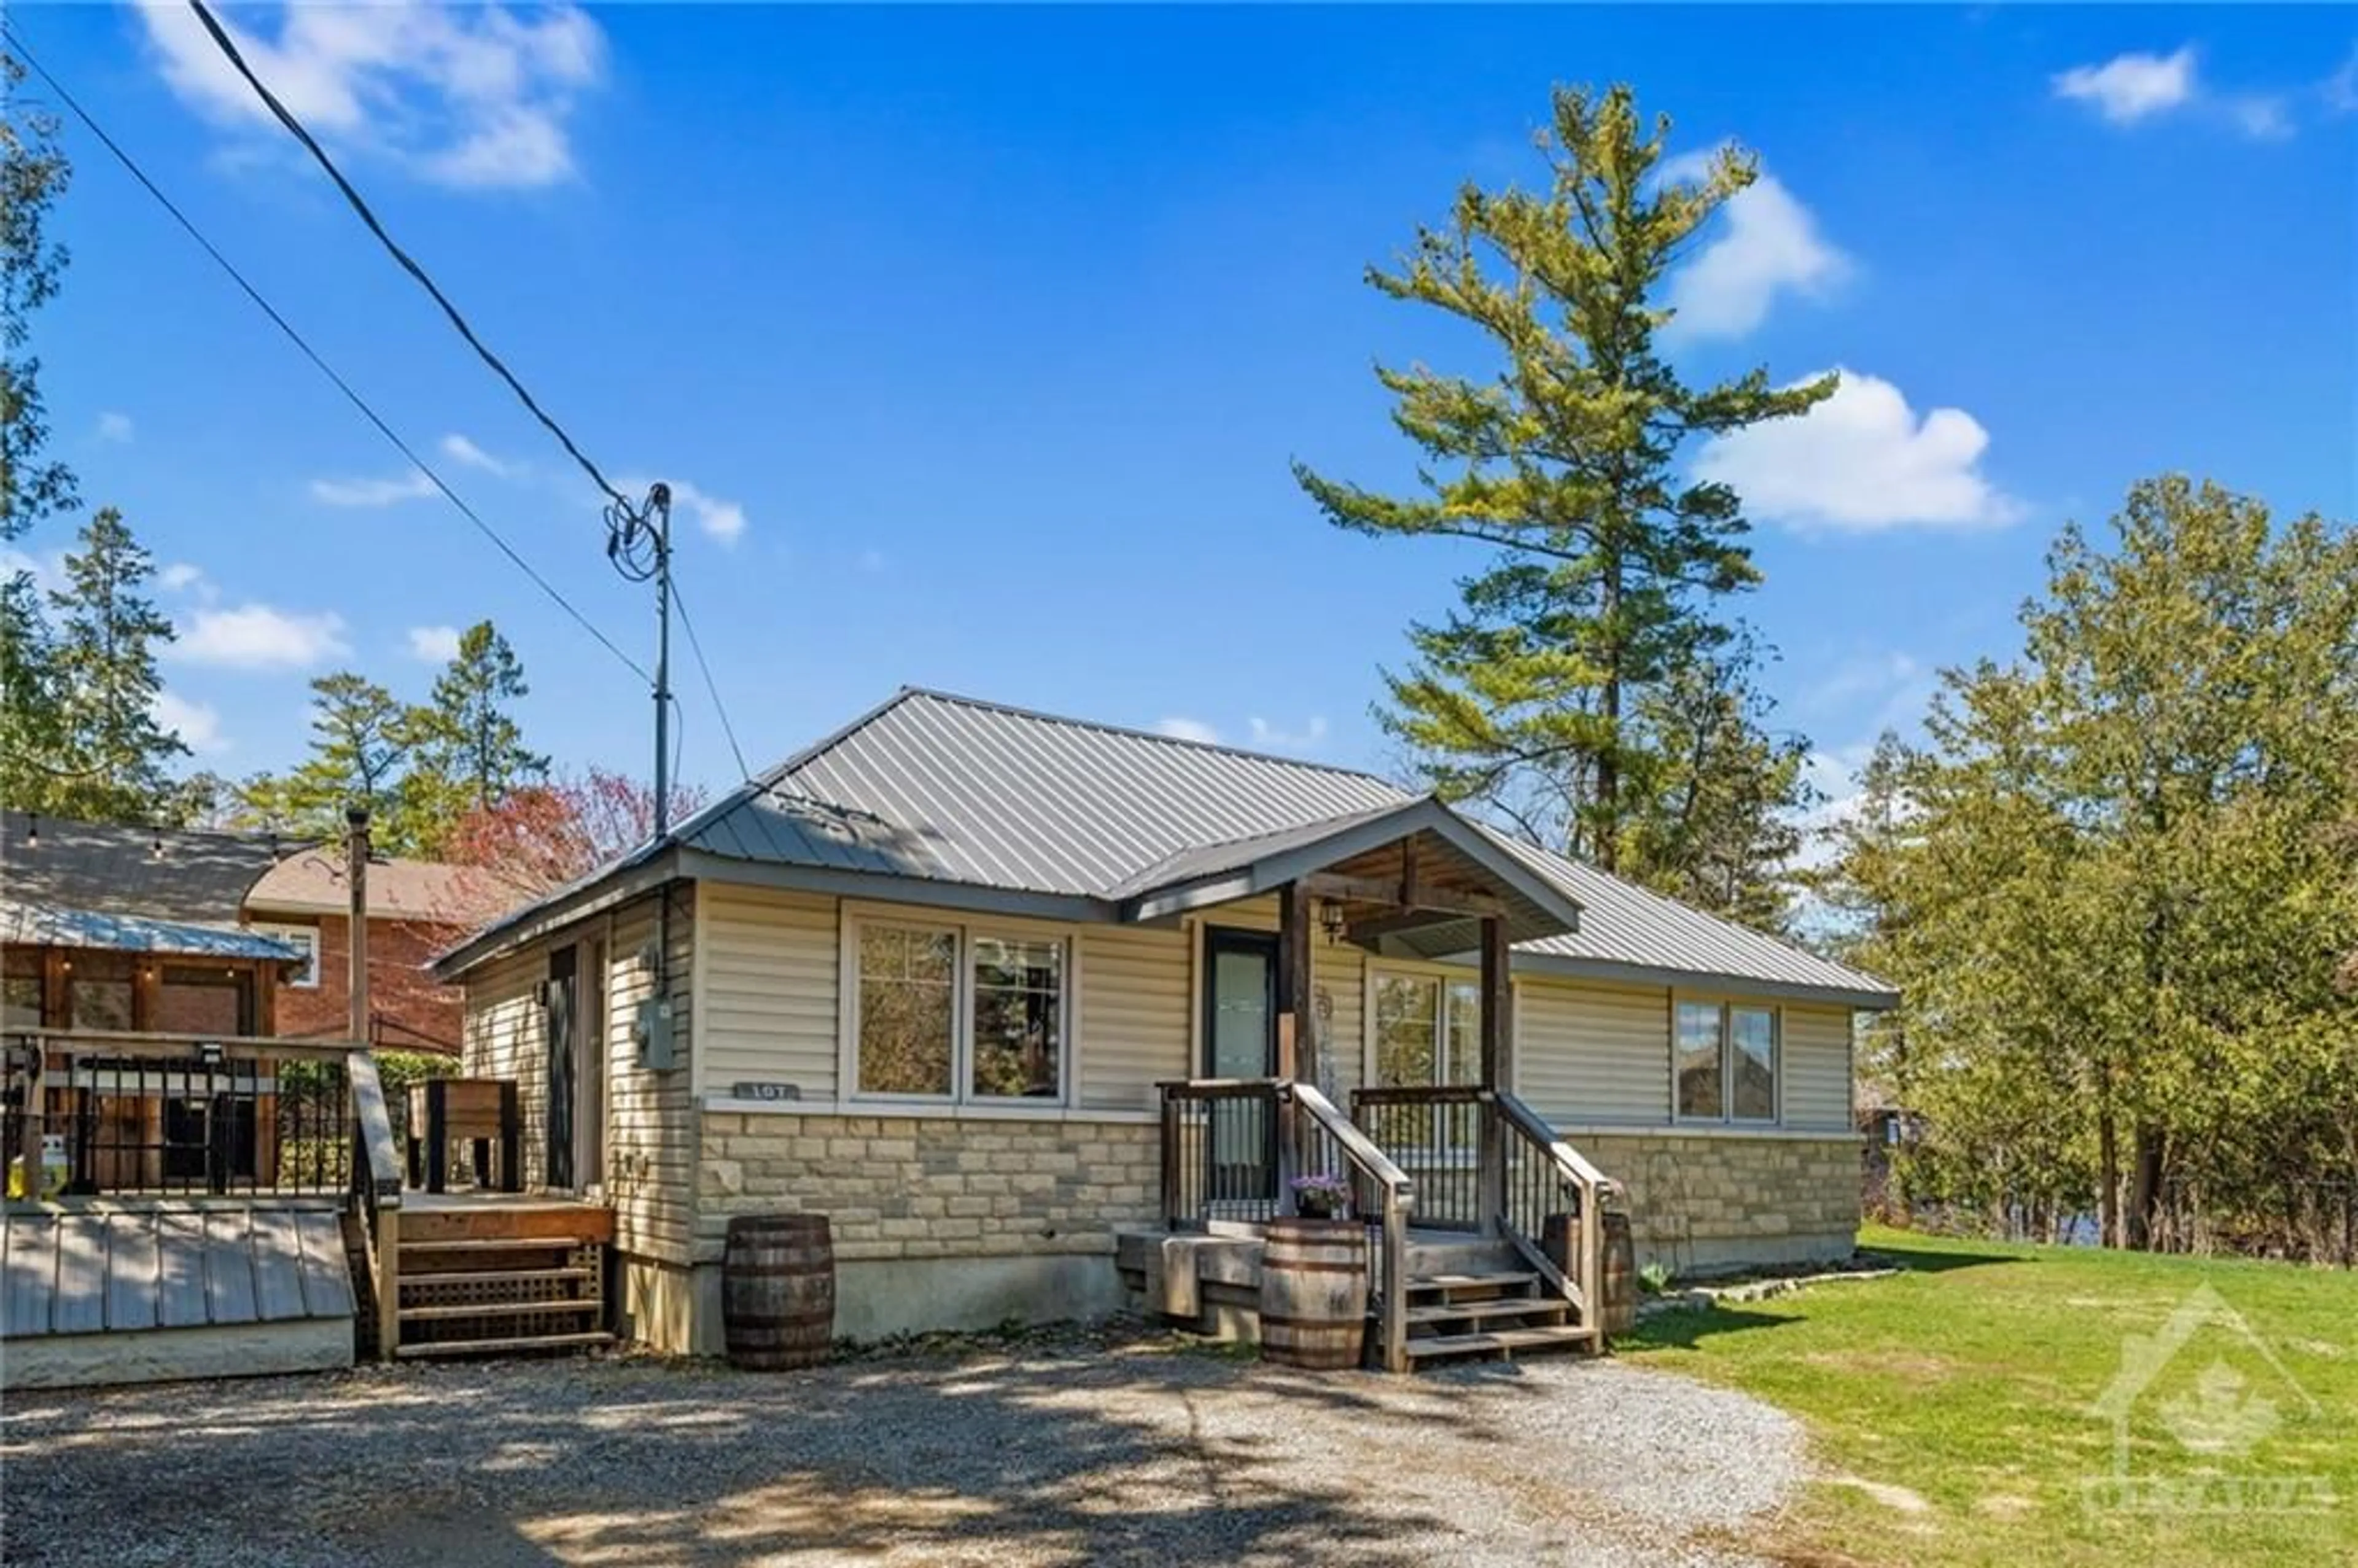 Cottage for 107 FARM Lane, Ottawa Ontario K0A 1T0